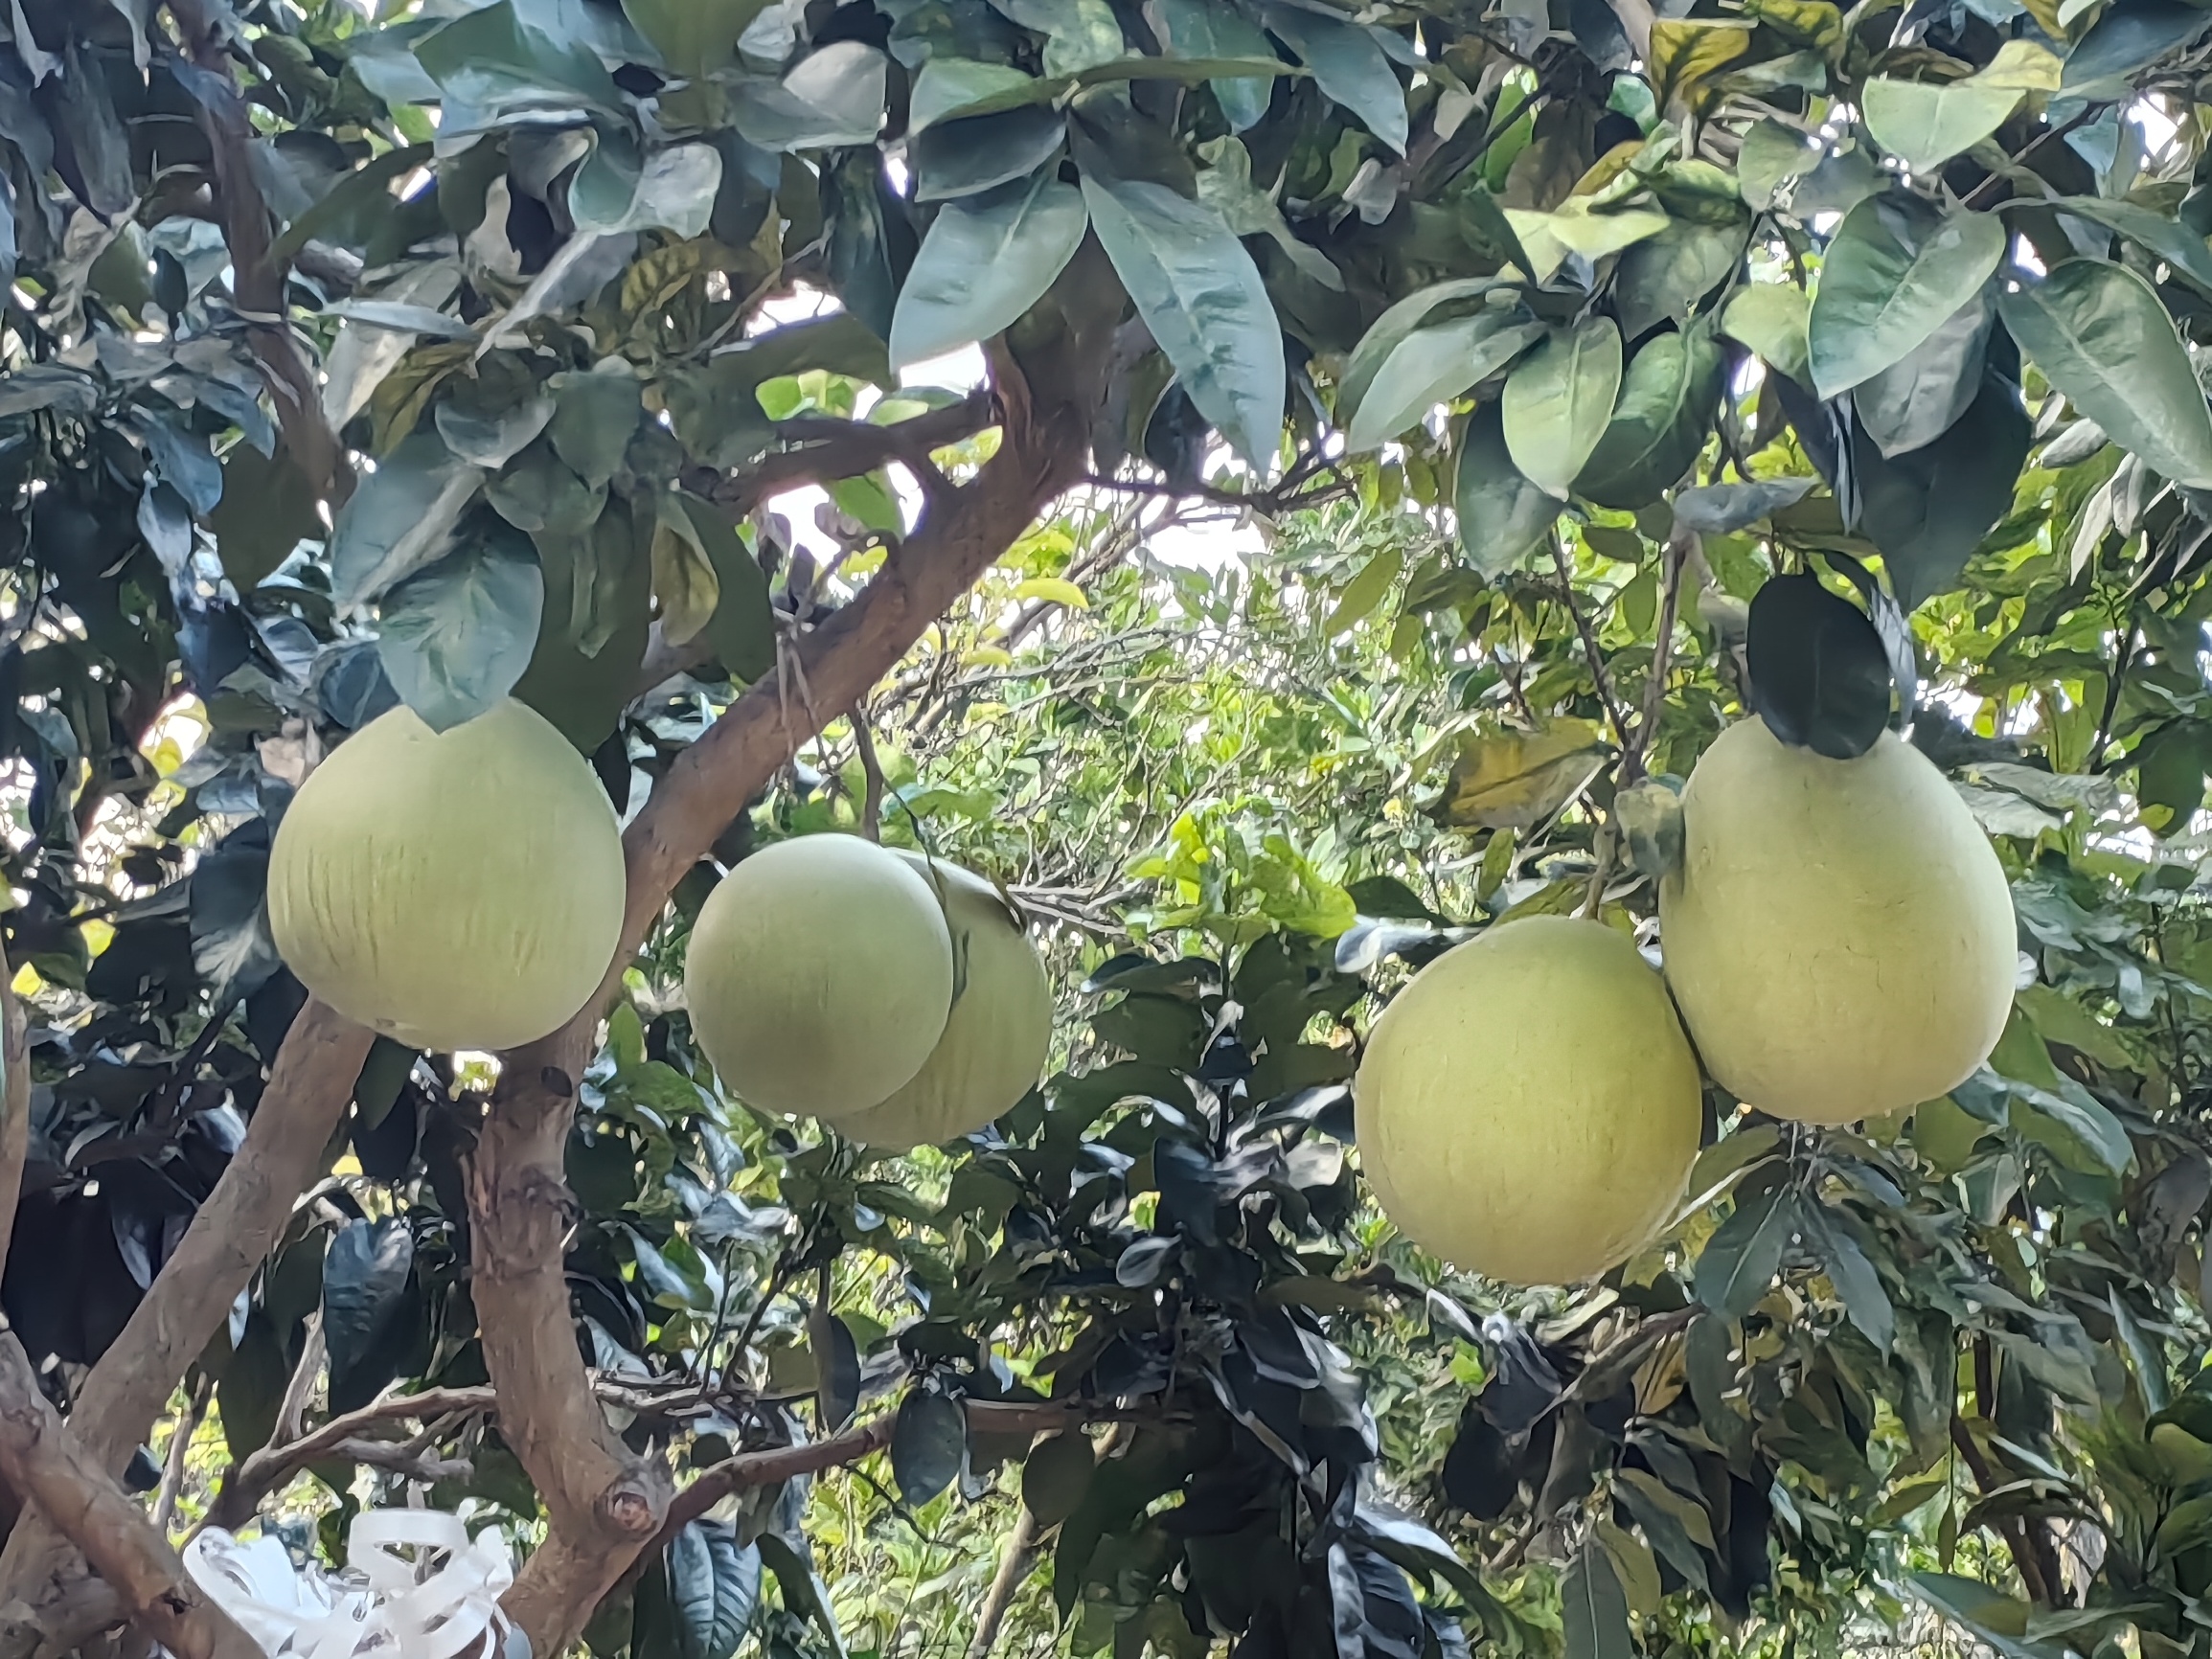 大果柚子可以吃啦，小果橙子过年再吃，香蕉林里发现香蕉